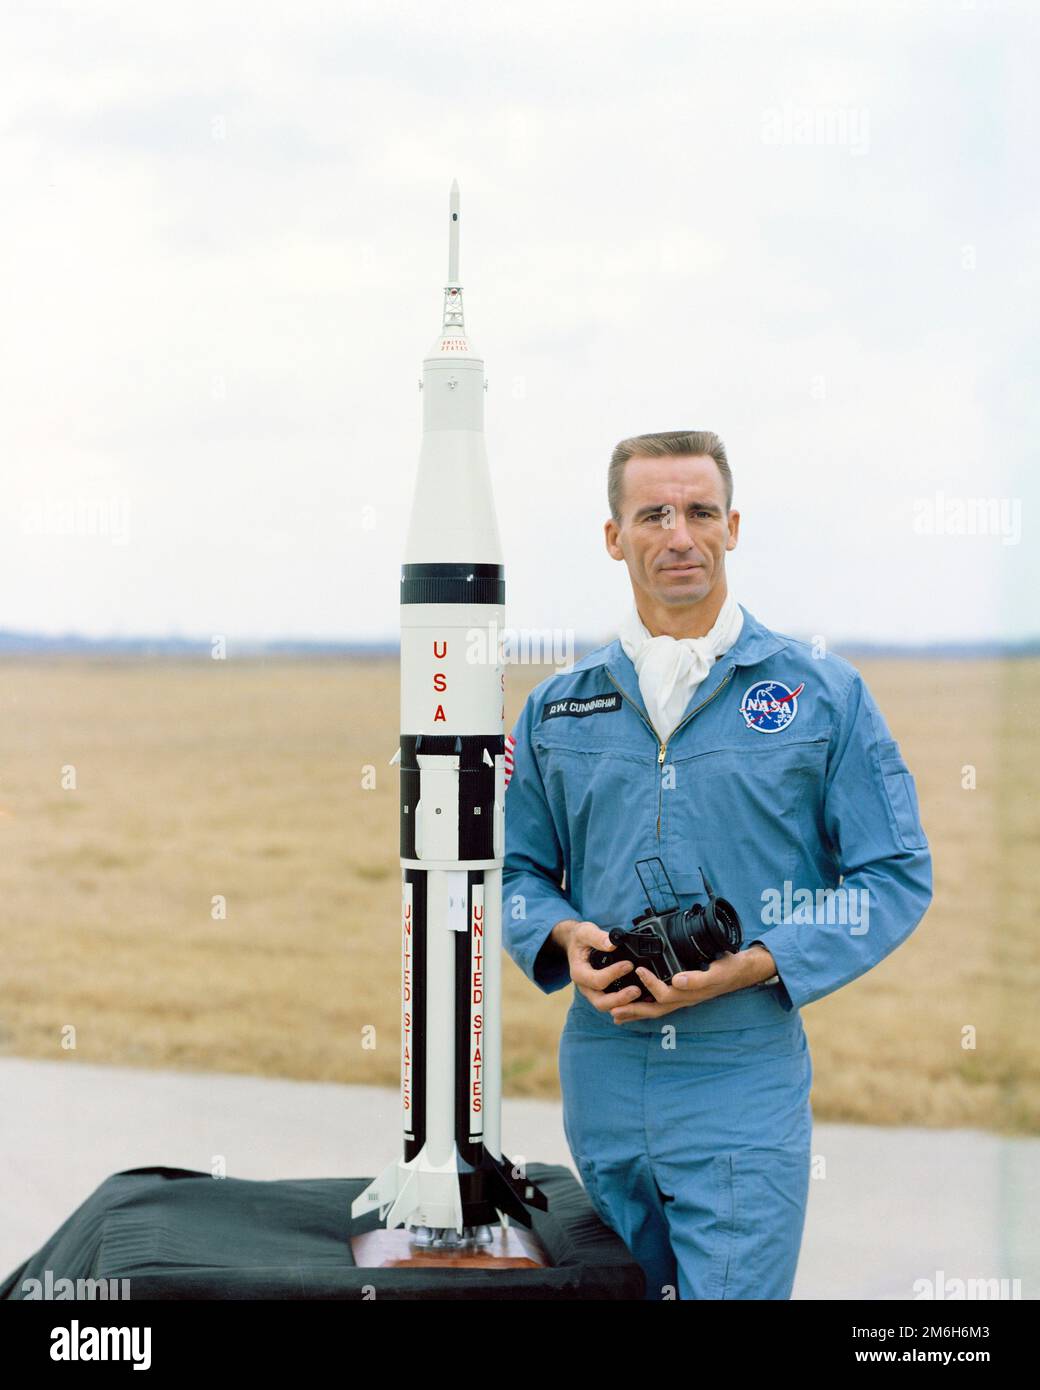 Cape Canaveral, Stati Uniti. 13 febbraio, 1968. L'astronauta della NASA Walter Cunningham, pilota lunare per la missione Apollo 7, si presenta con un modello del modulo lunare Apollo 7 e della nave missilaria Saturno al Kennedy Space Center, 13 febbraio 1968 a Cape Canaveral, Florida. Cunningham morì il 4 gennaio 2023 all'età di 90 anni, l'ultimo membro sopravvissuto della missione NASA Apollo 7. Foto Stock